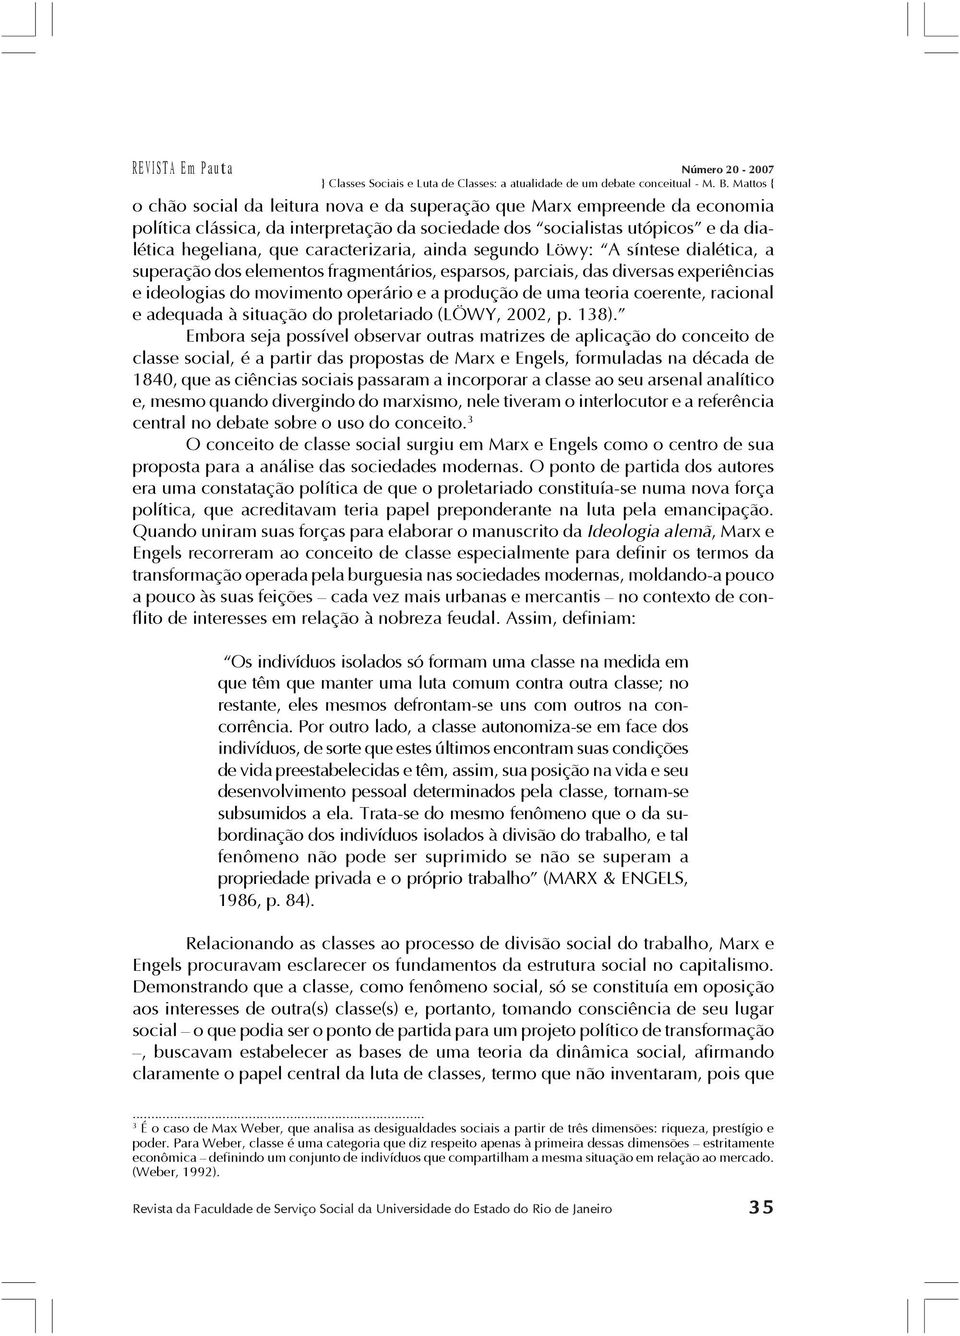 racional e adequada à situação do proletariado (LÖWY, 2002, p. 138).